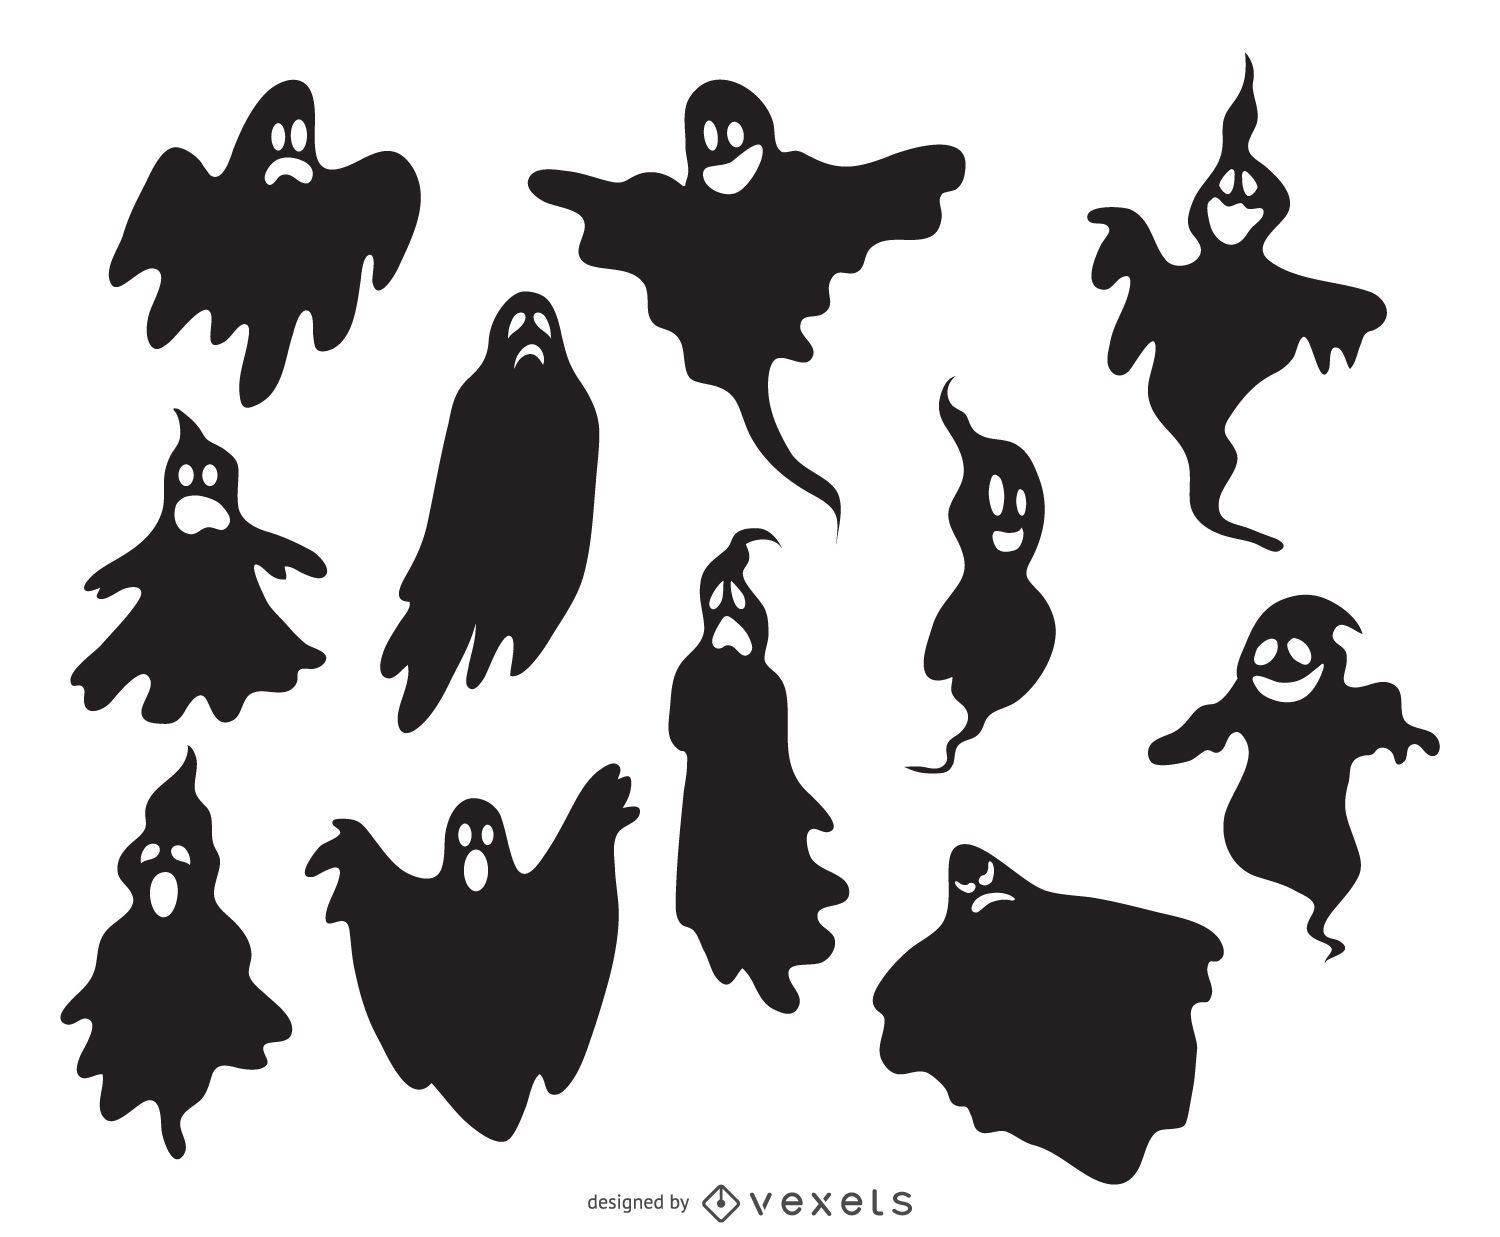 Silhuetas de fantasmas assustadoras ilustradas